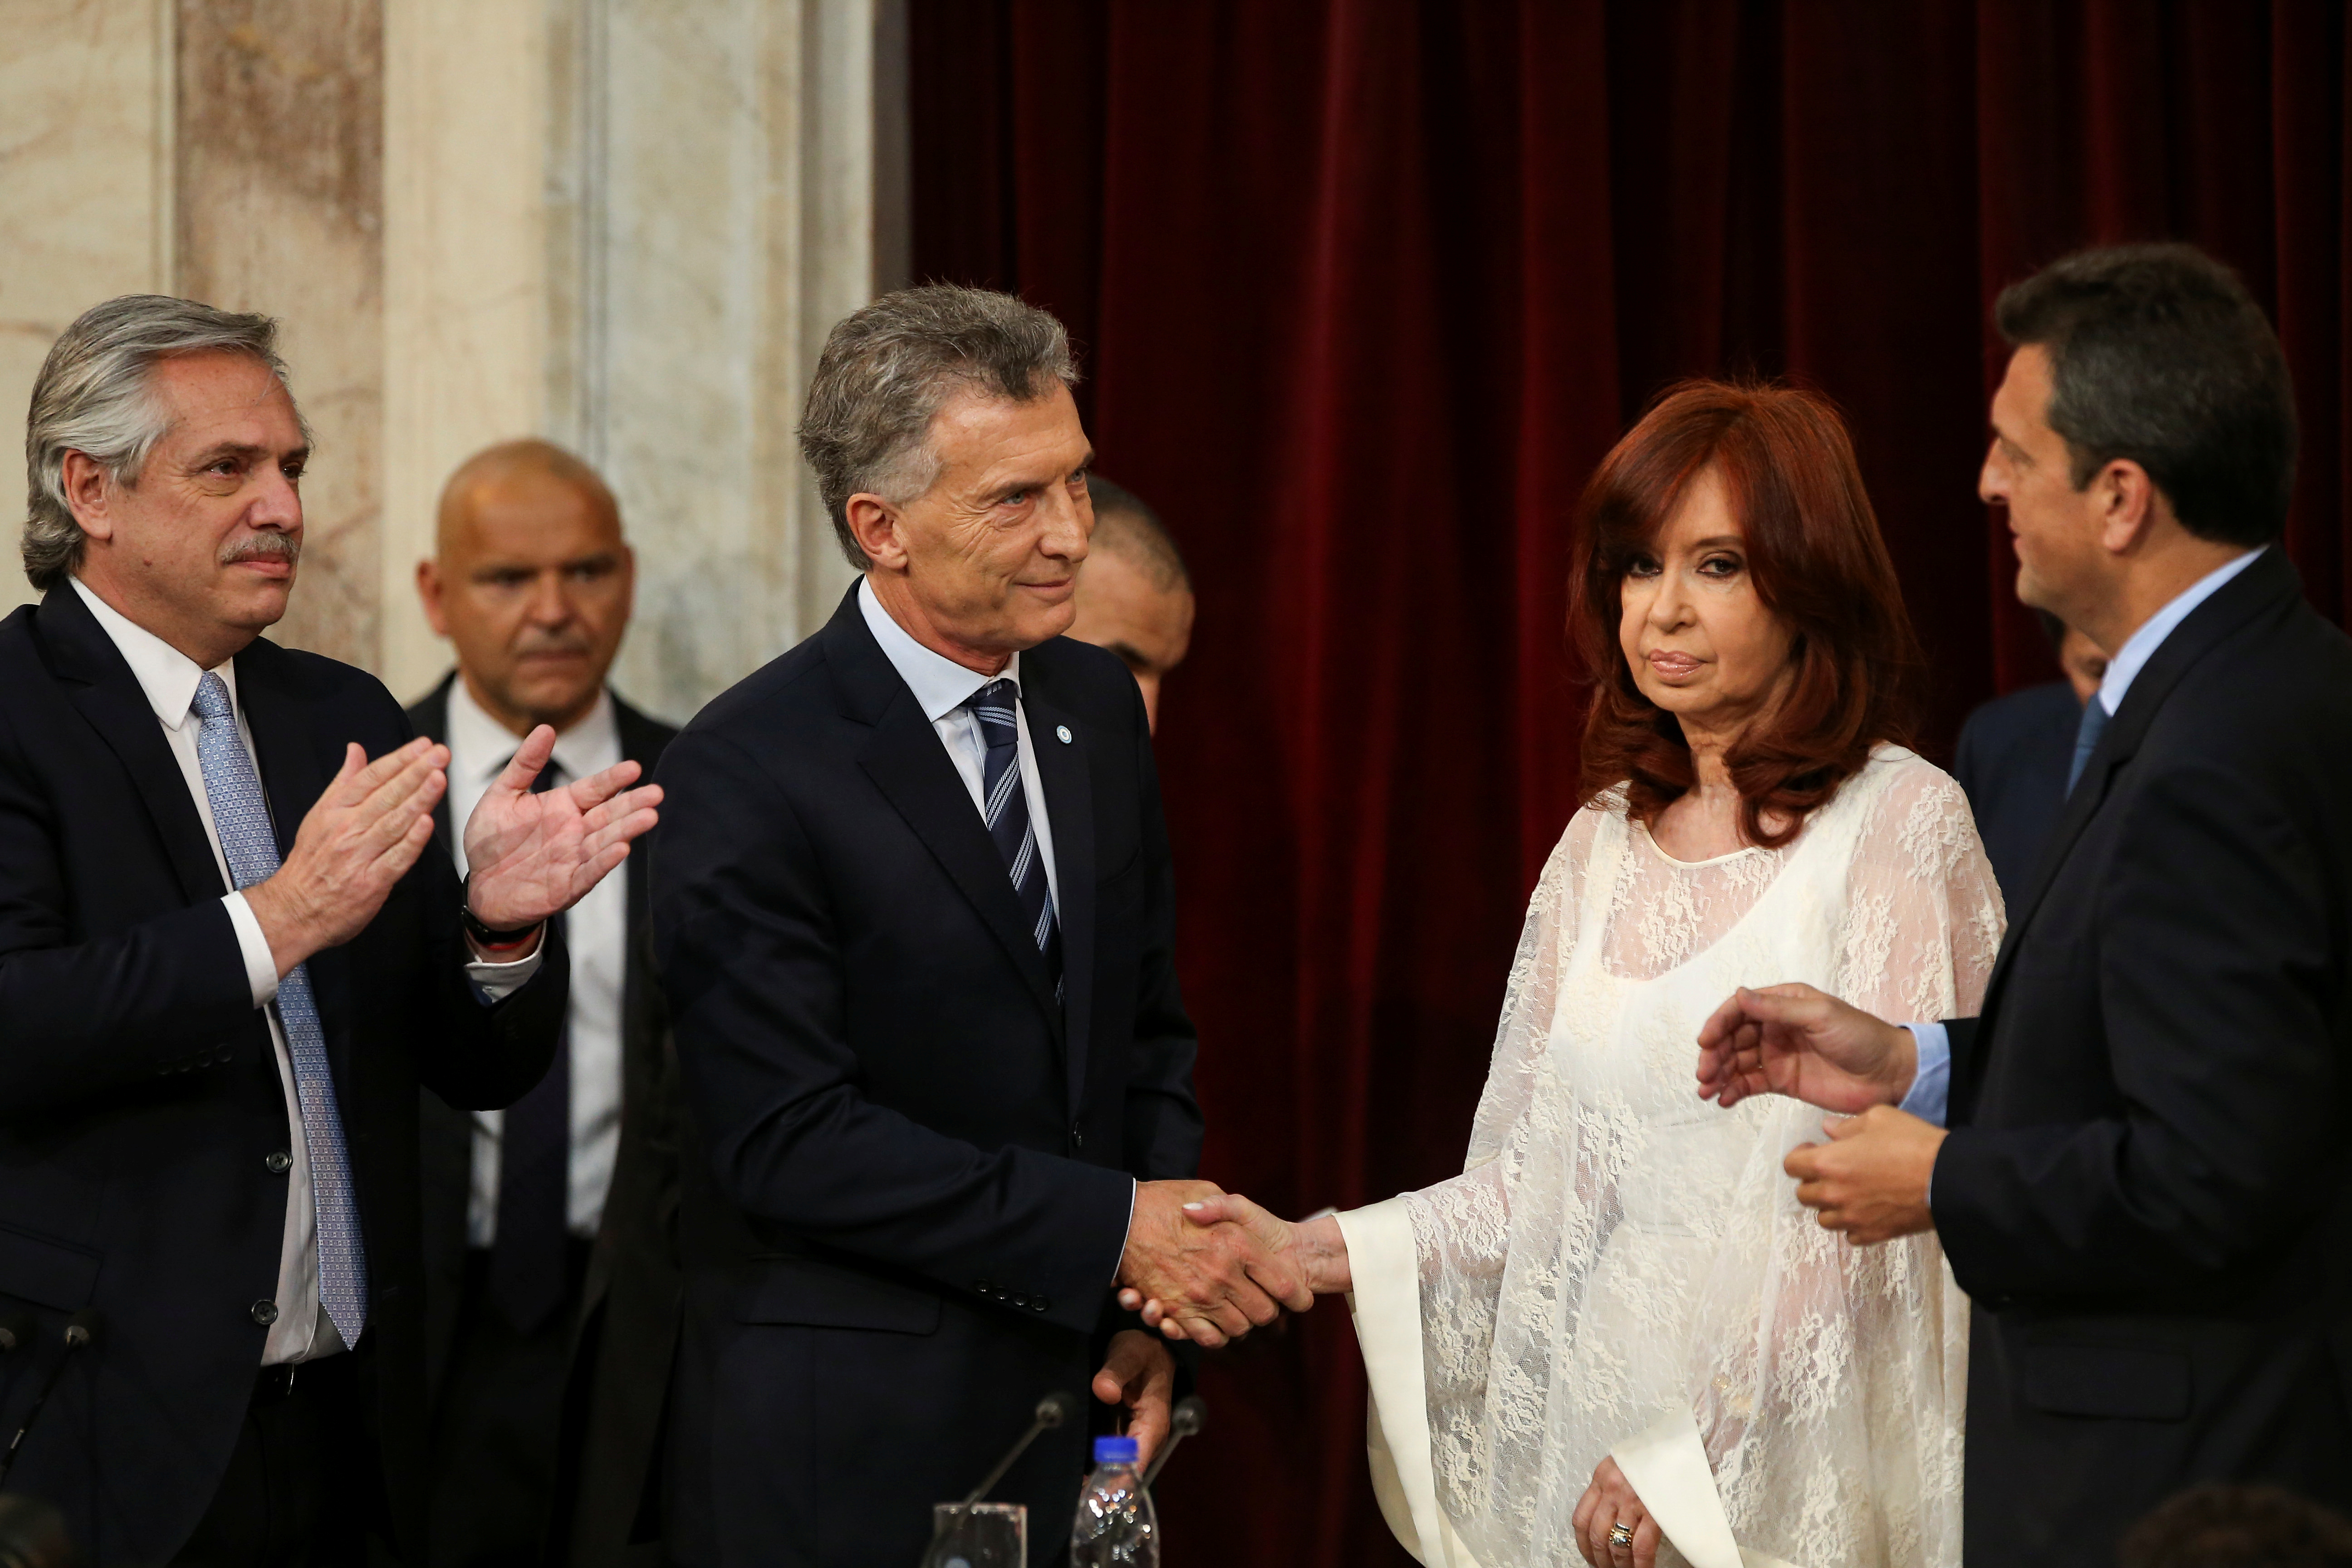 Tal vez una de las imágenes más claras de la grieta política: Cristina Kirchner evita mirar y reconocer el saludo de Mauricio Macri en la asunción presidencial de Alberto Fernández
REUTERS/Agustin Marcarian